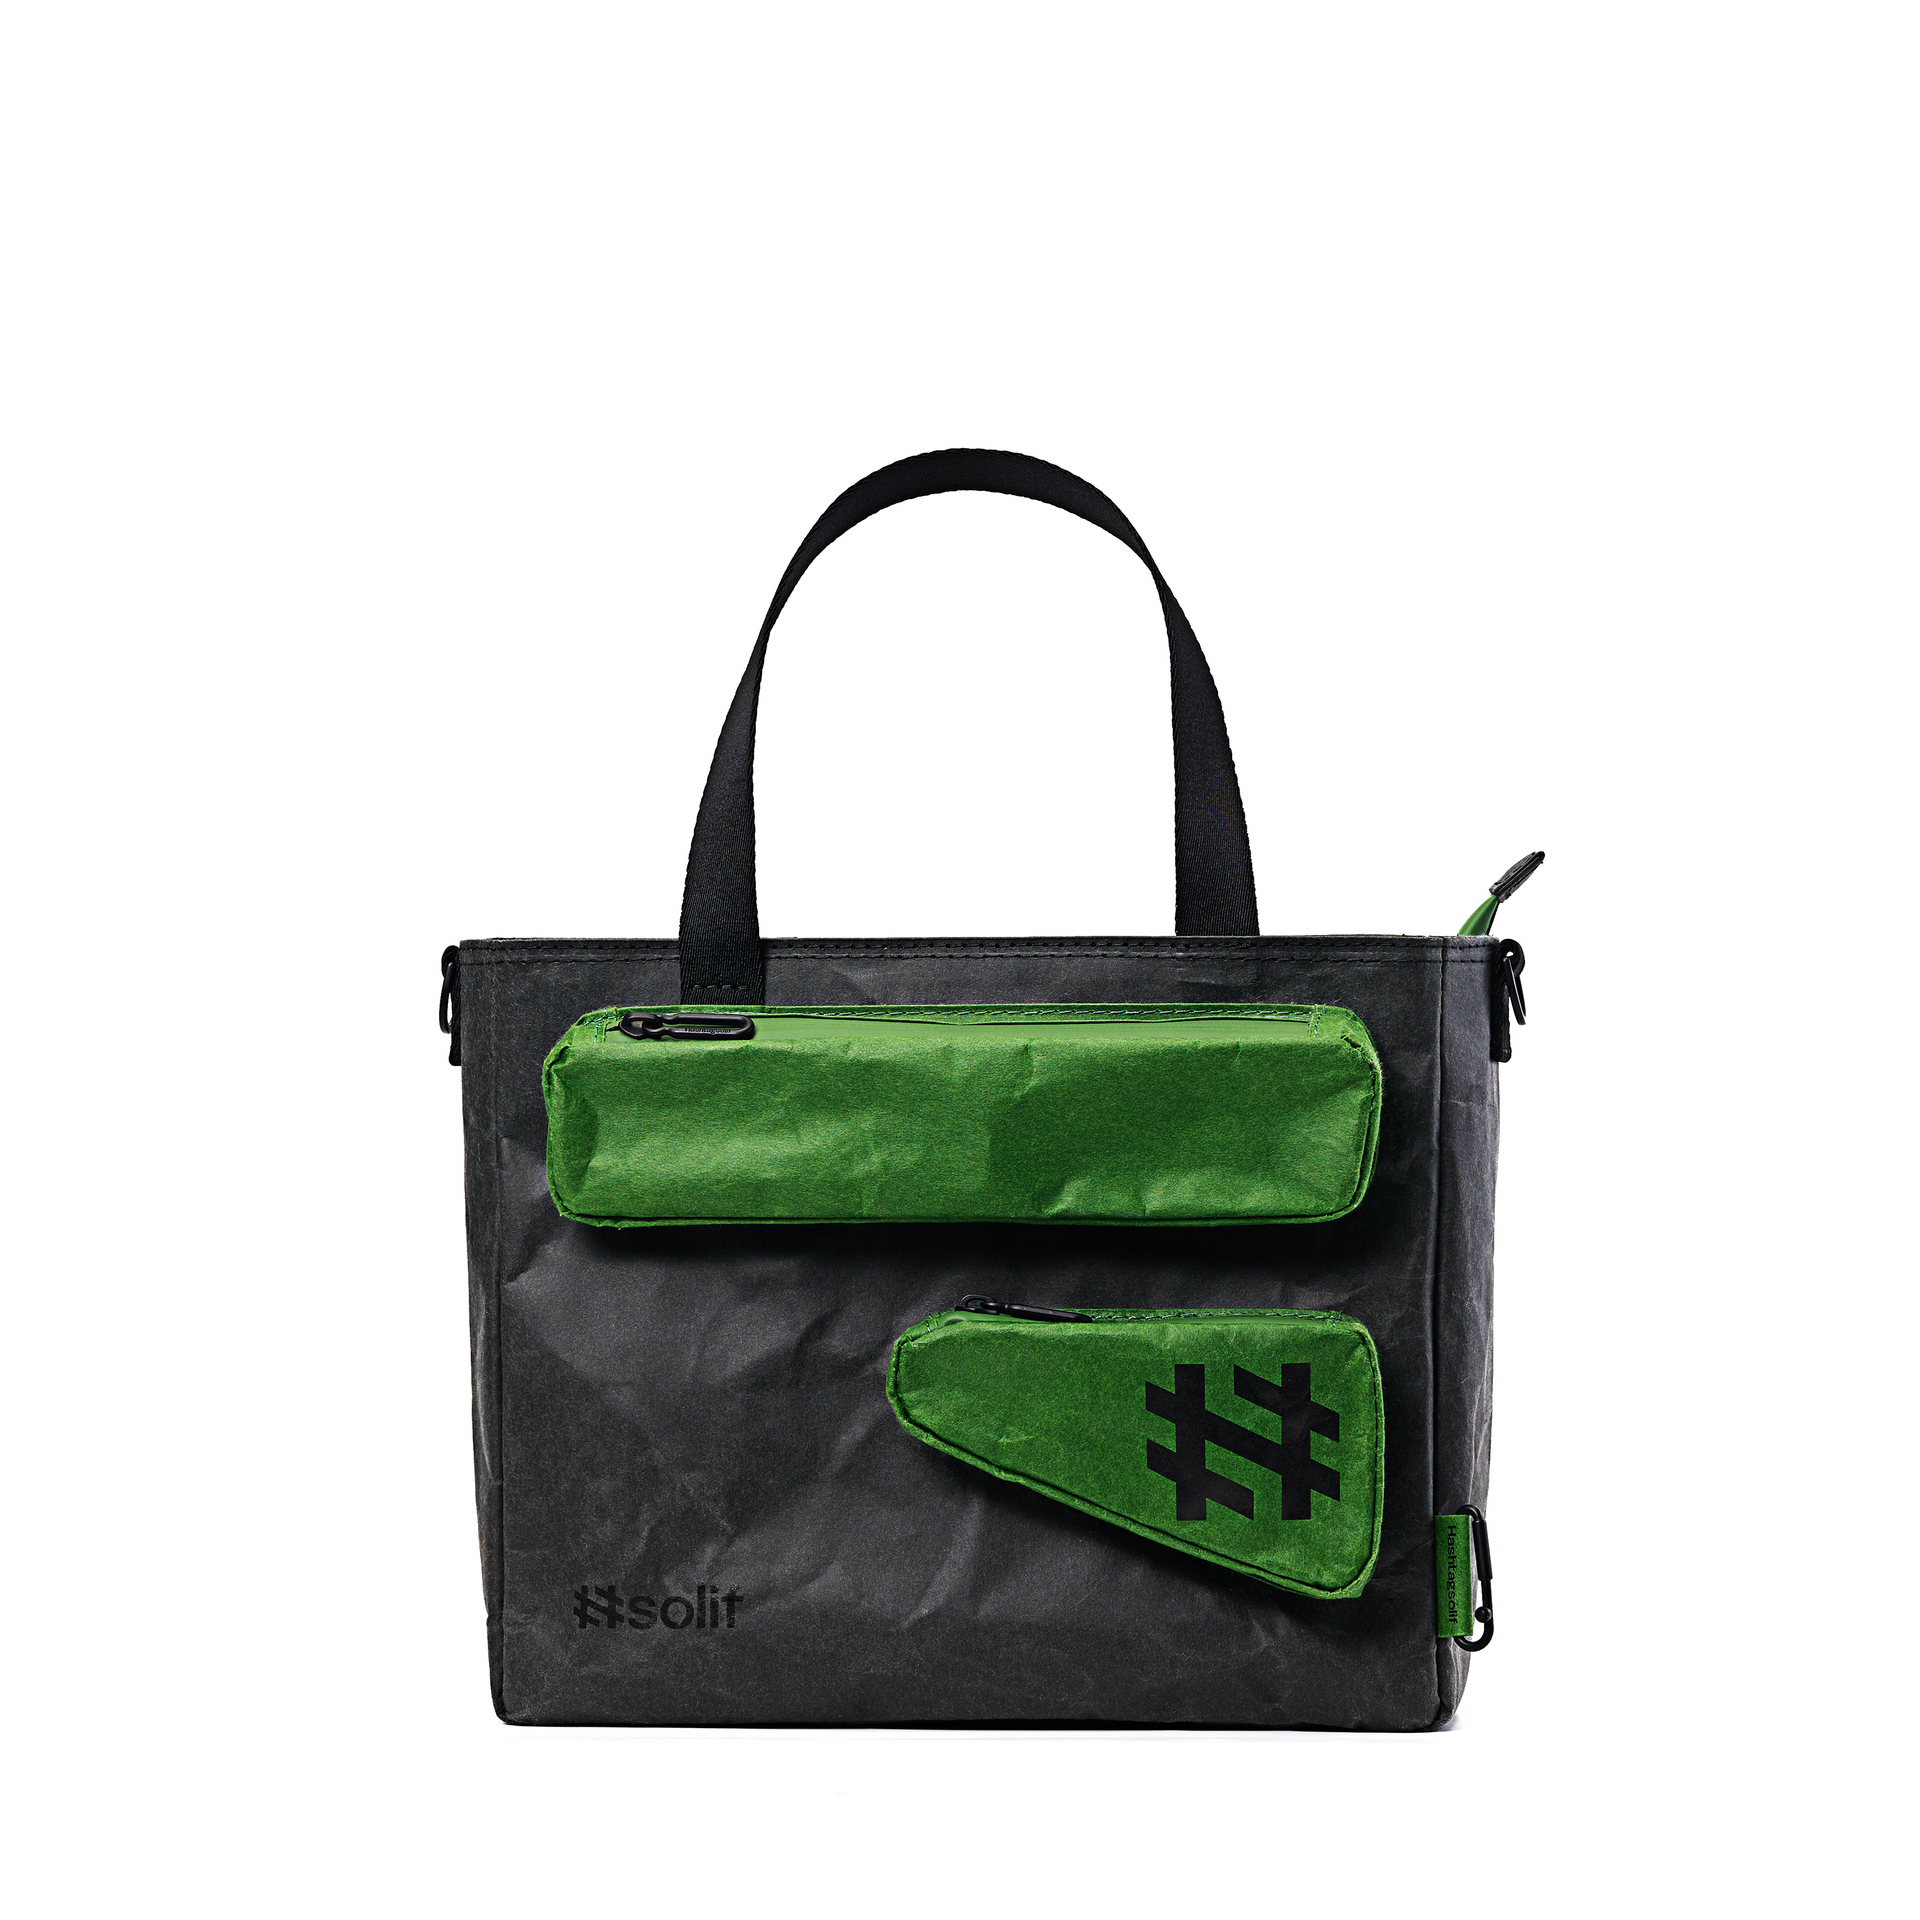 Solif - messenger bag| FOREST GREEN